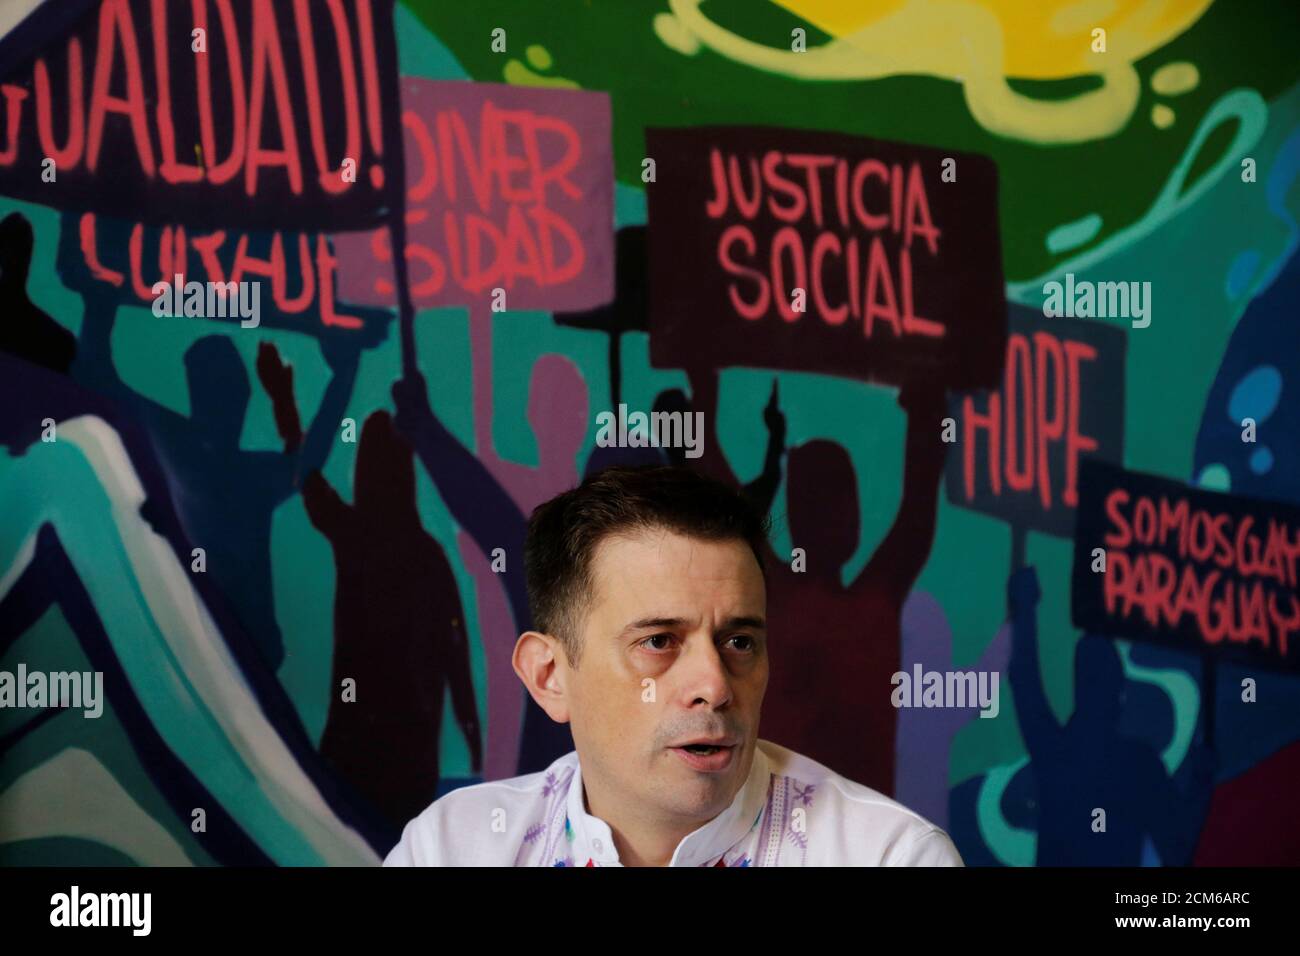 Simon Cazal, director ejecutivo de la organización SOMOSGAY, habla con Reuters en Asunción, Paraguay el 22 de marzo de 2019. Los escritos en el muro leen: "Igualdad, Diversidad, Justicia Social y Somos Gay Paraguay". Foto tomada el 22 de marzo de 2019. REUTERS/Jorge Adorno Foto de stock